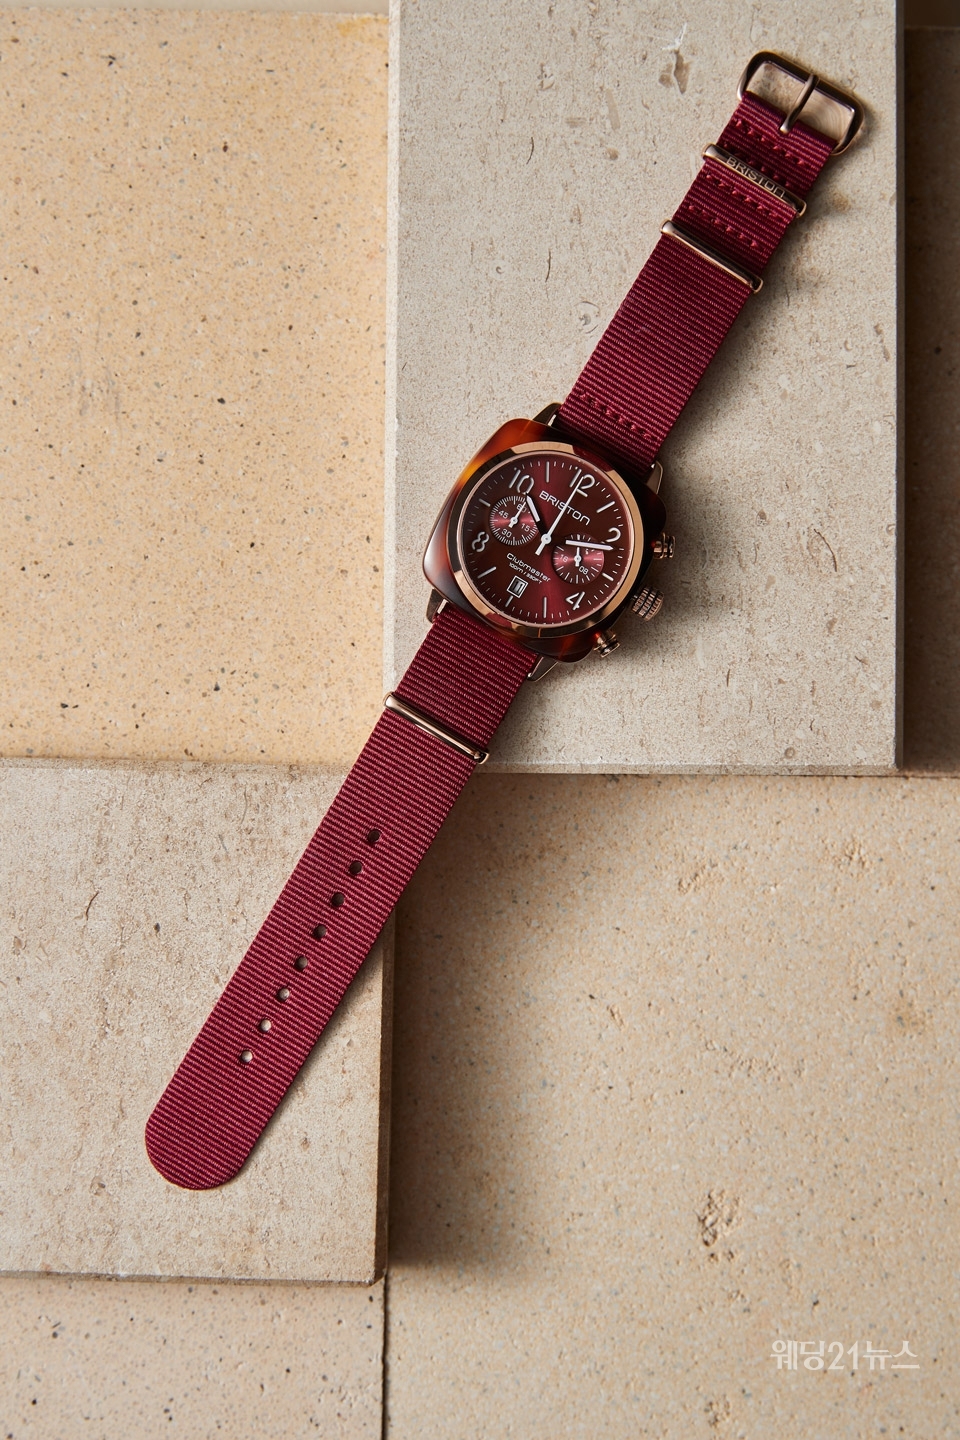 사진 : 프랑스 나토 스트랩 시계 브랜드 ‘브리스톤(BRISTON)’, 버건디 컬러의 클럽마스터 아이콘 510P8ND